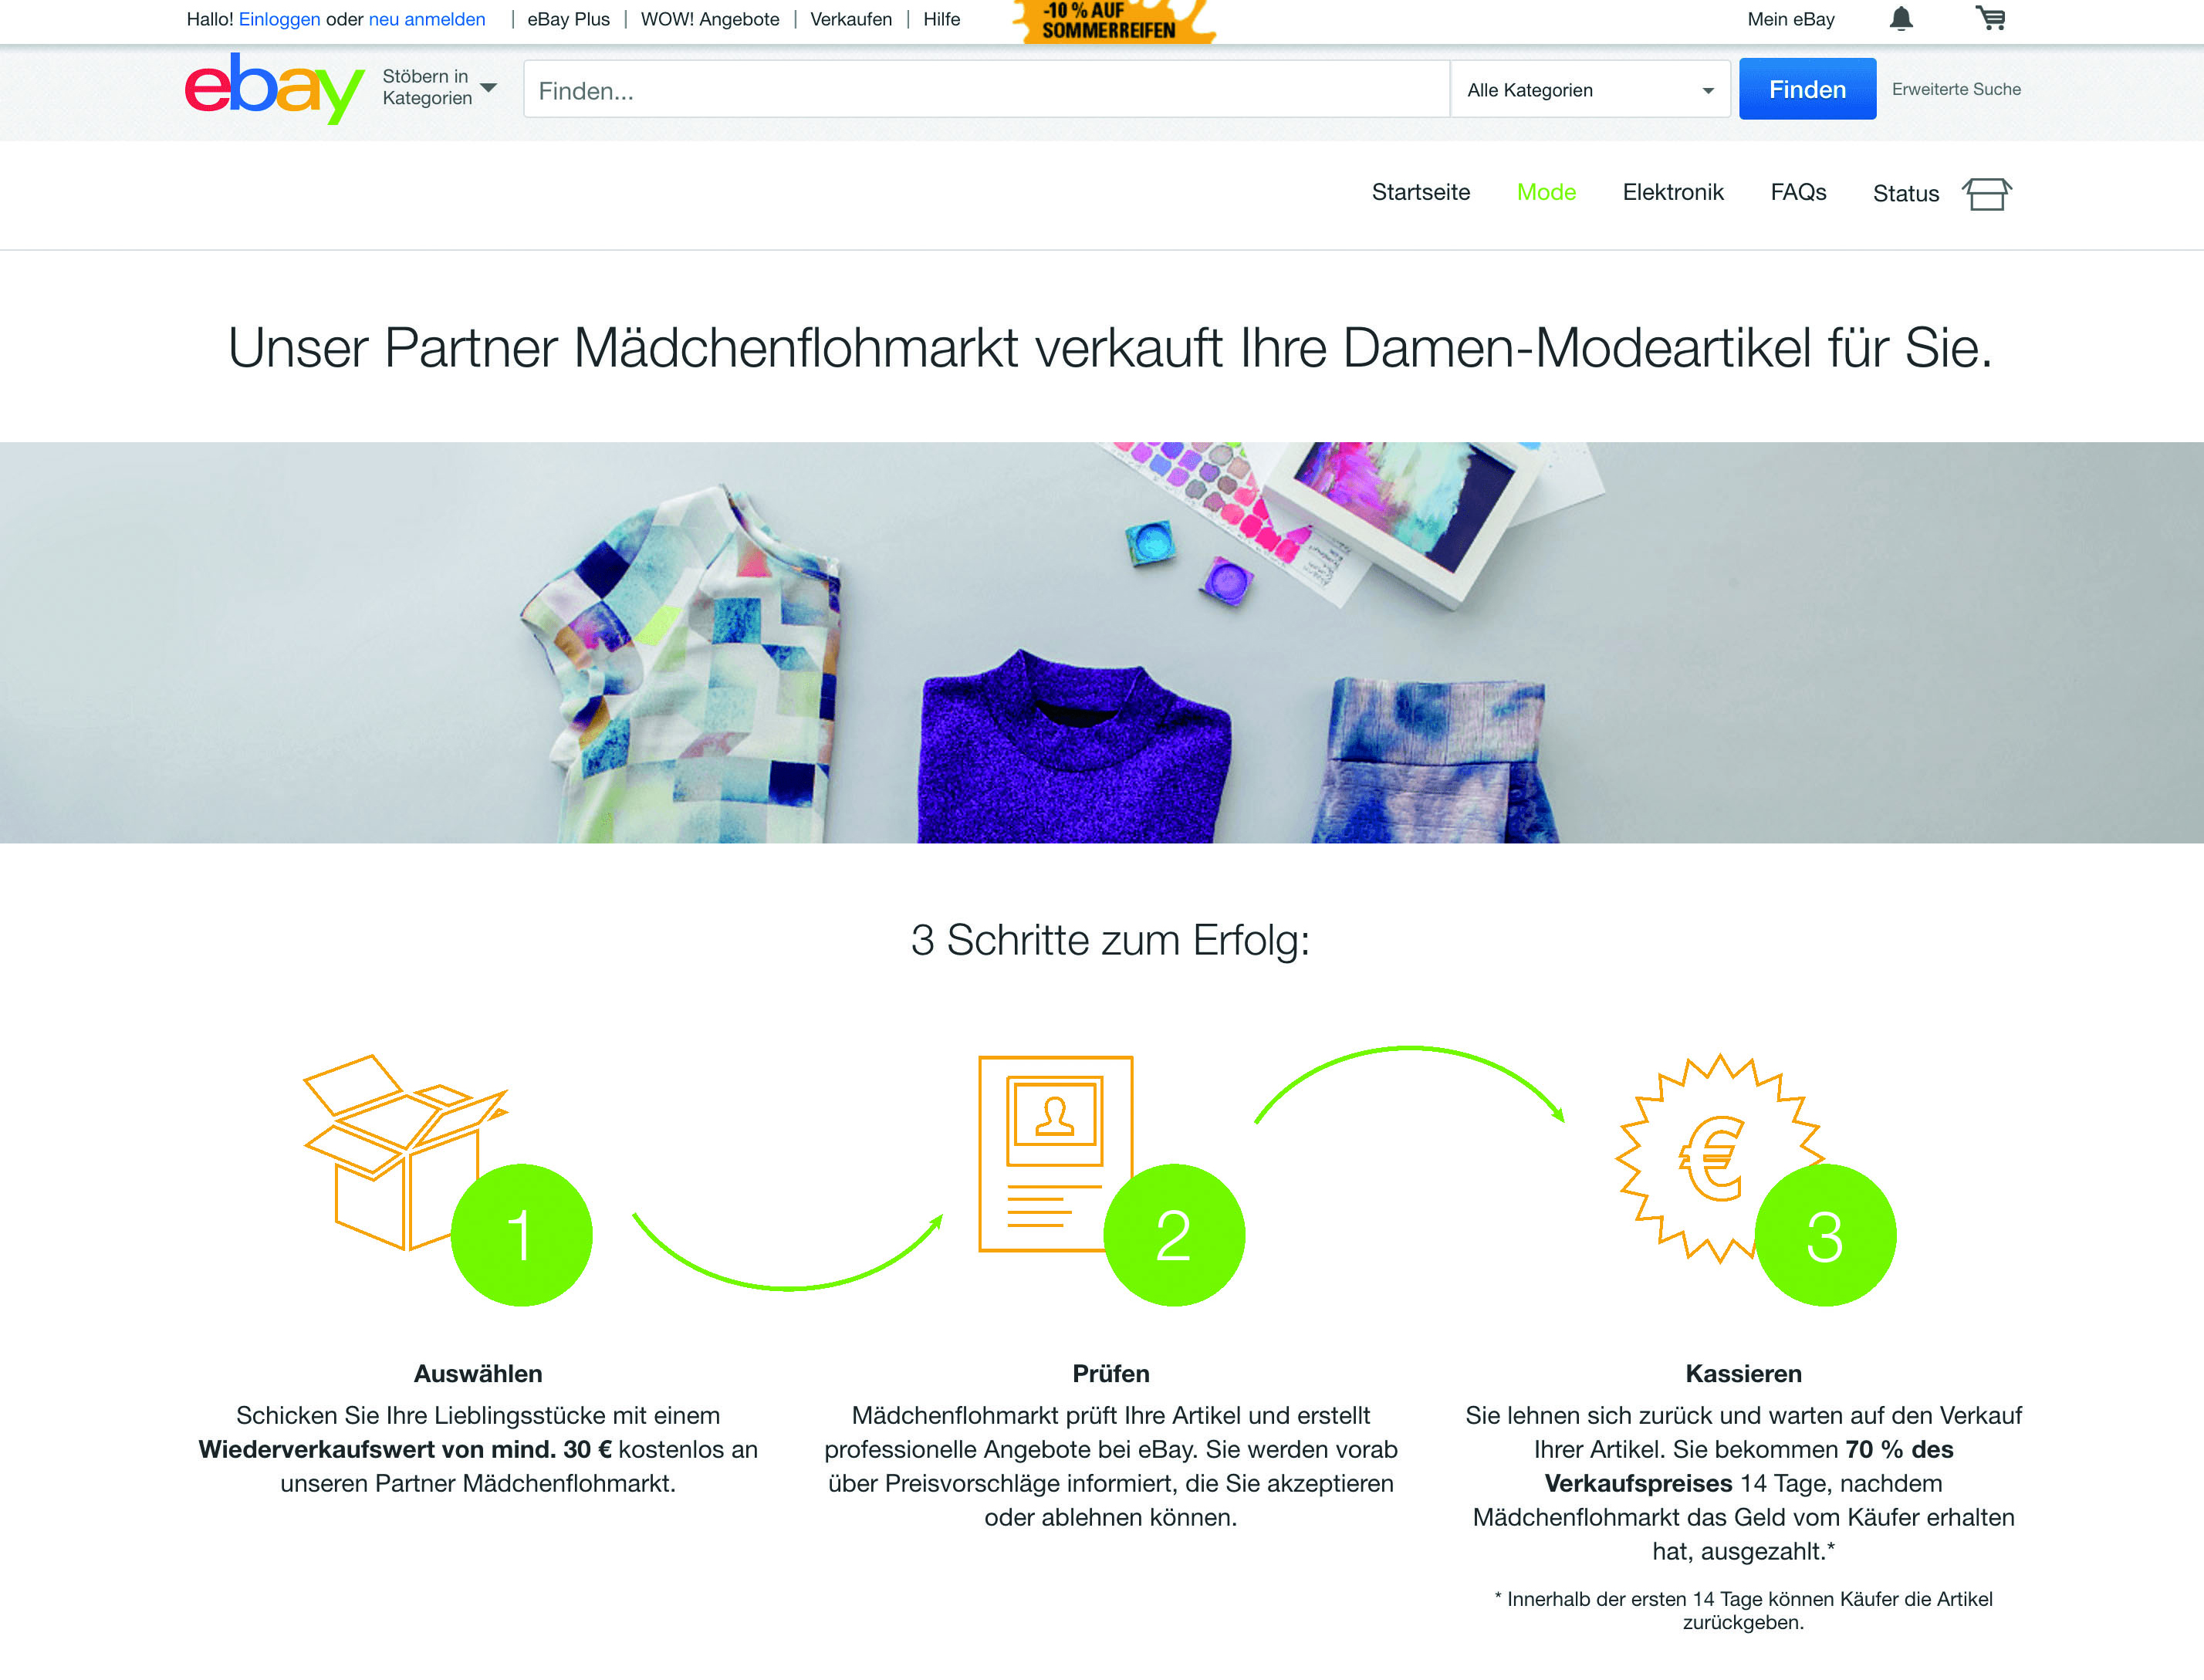 Verkaufen Lassen Mit Ebay Komfort Ebay Startet Neuen Service Für